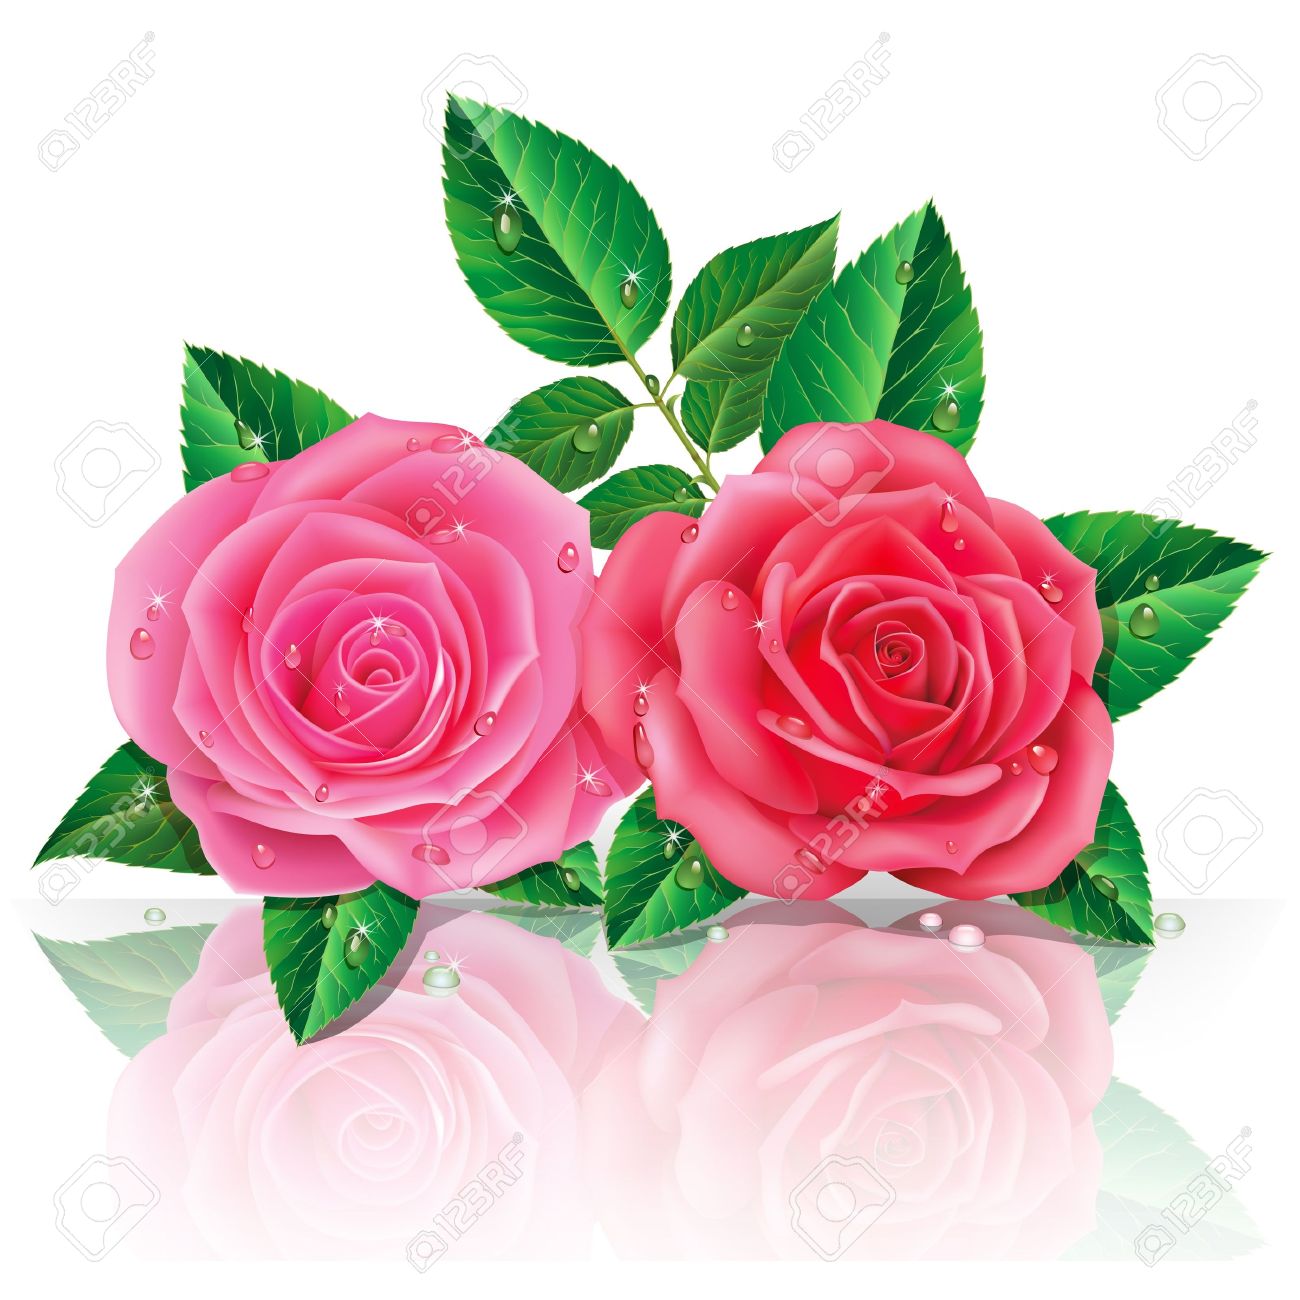 color imagenes bonitas de rosas